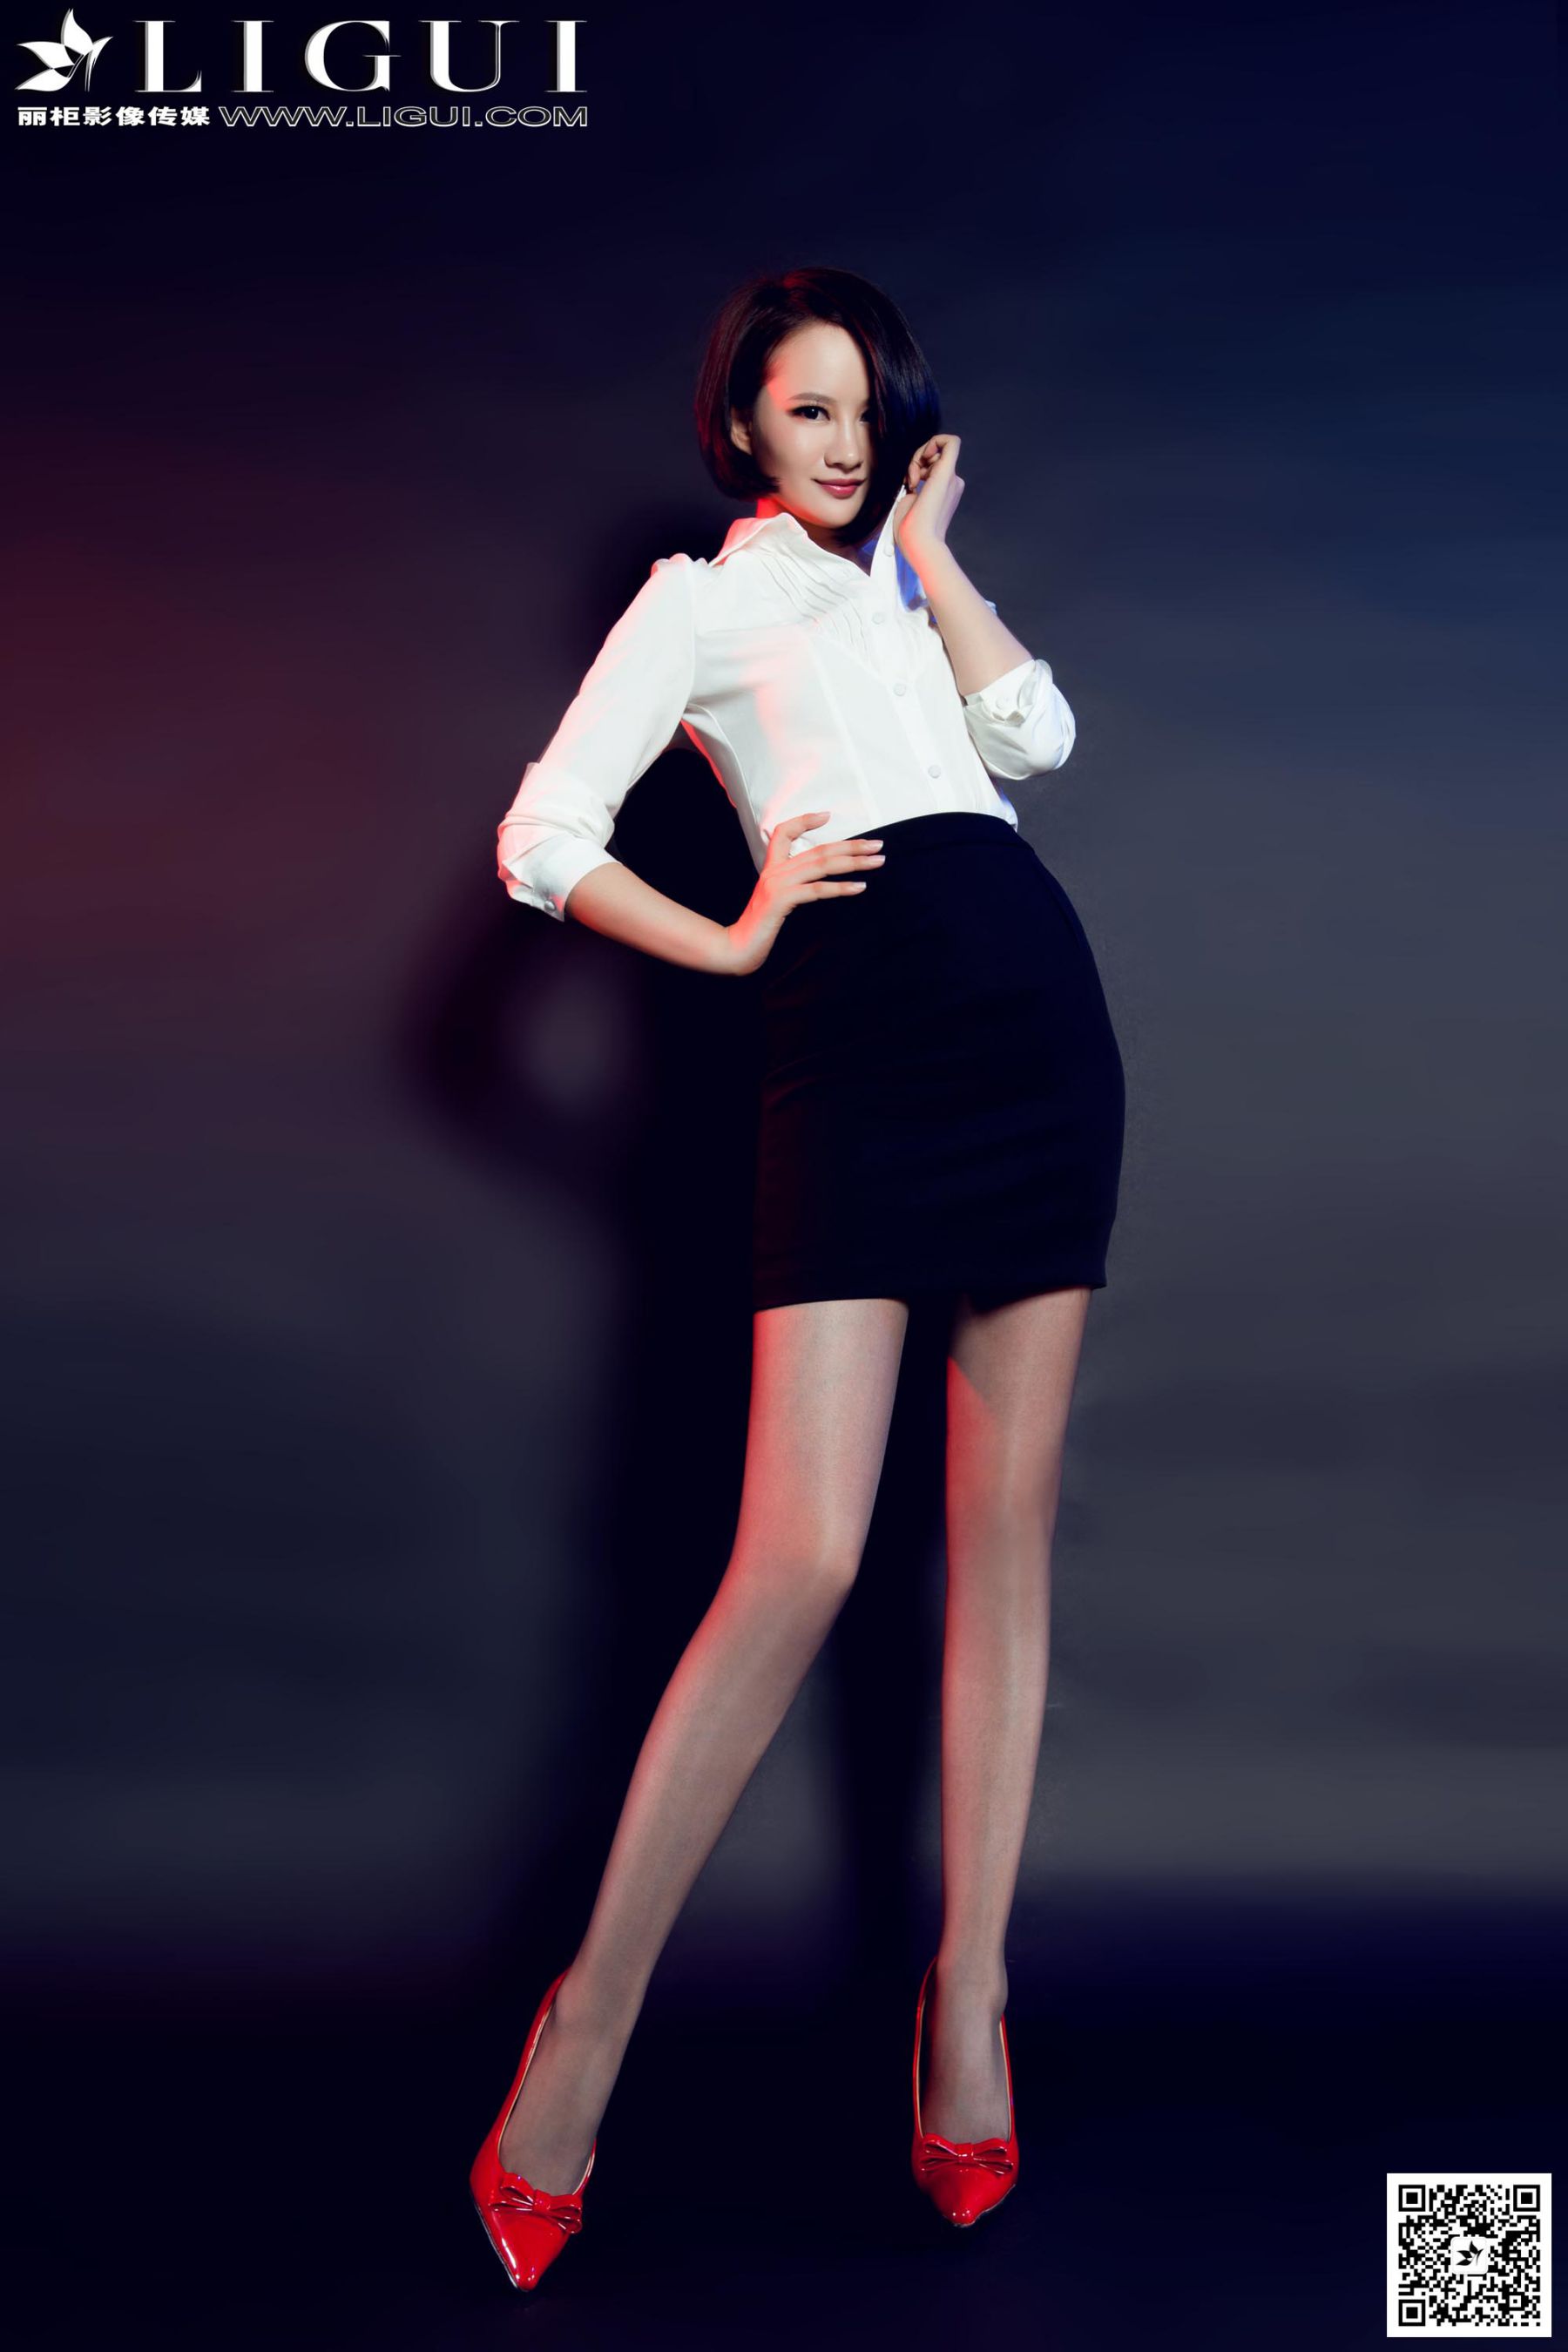 [丽柜LiGui] Model AMY《红高跟短发灰丝女郎》美腿玉足写真图片/(43P)